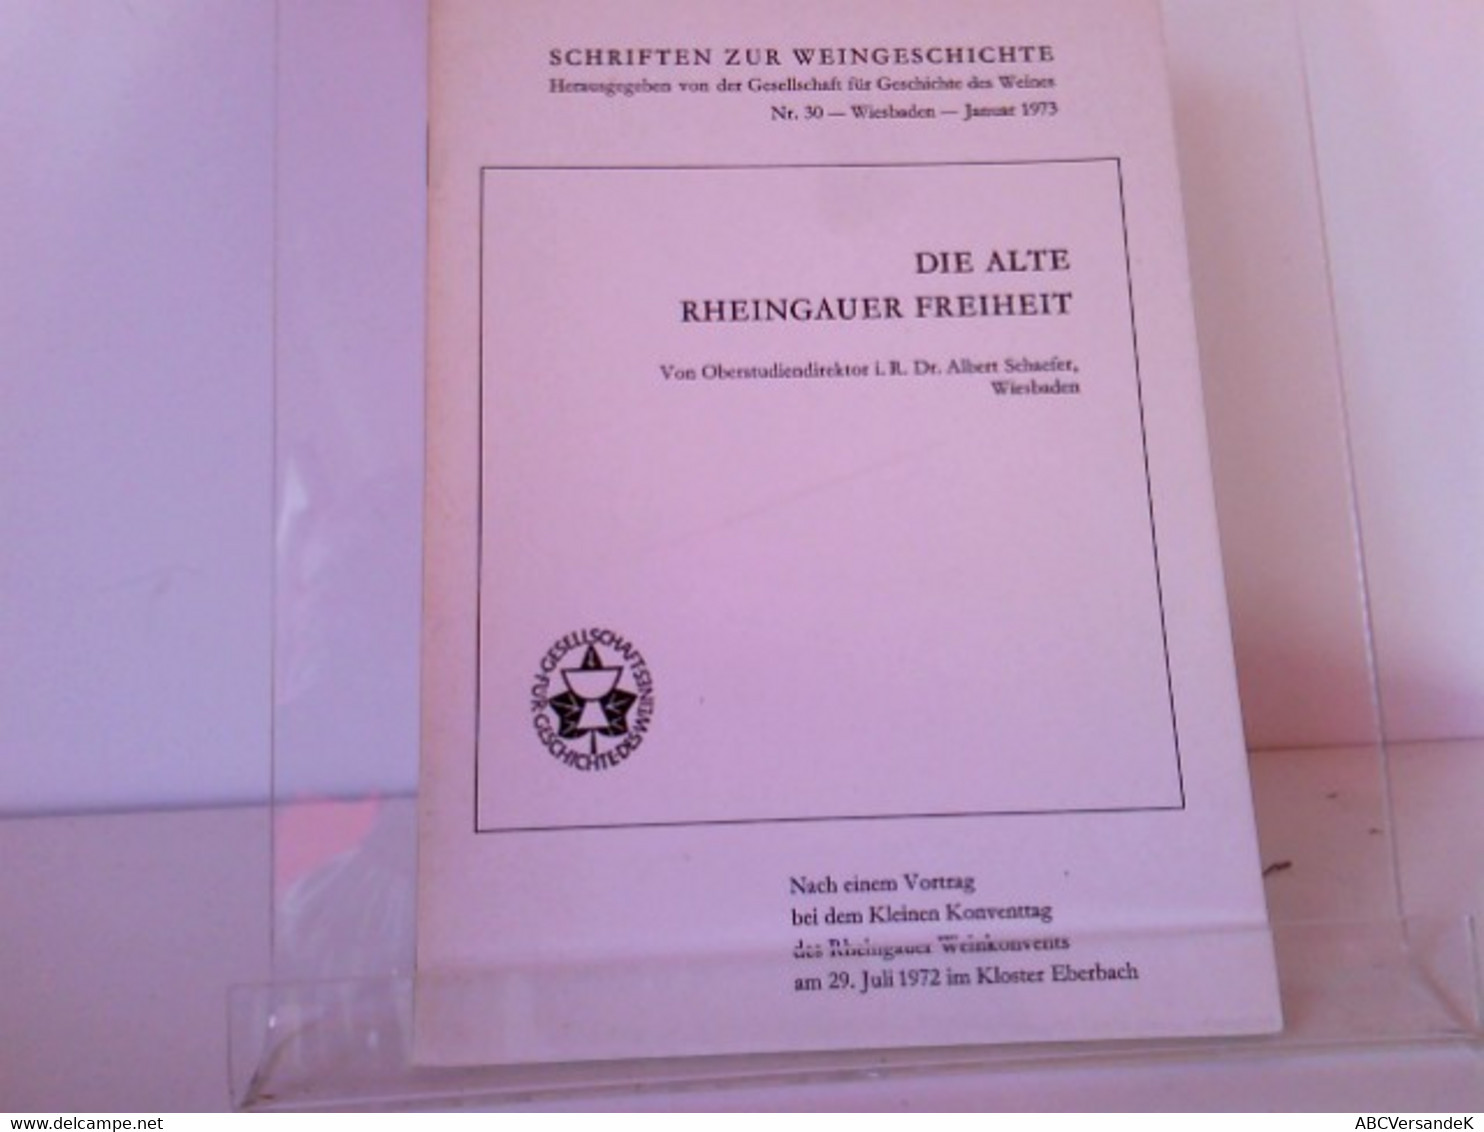 Schriften Zur Weingeschichte Die Alte Rheingauer Freiheit - Hesse